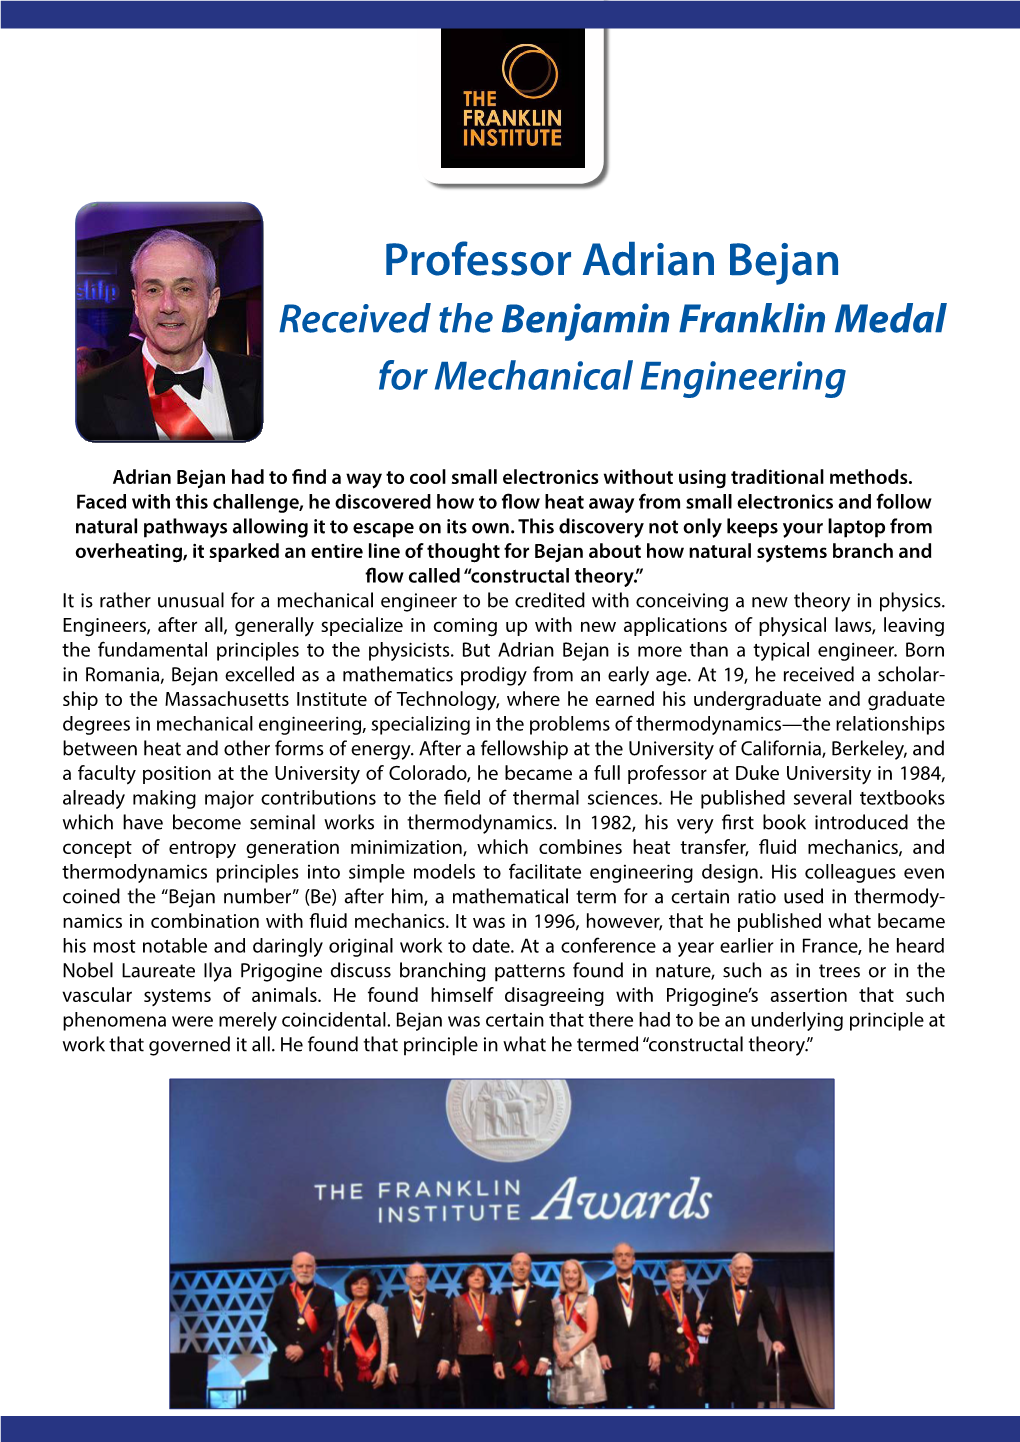 Professor Adrian Bejan Received the Benjamin Franklin Medal for Mechanical Engineering